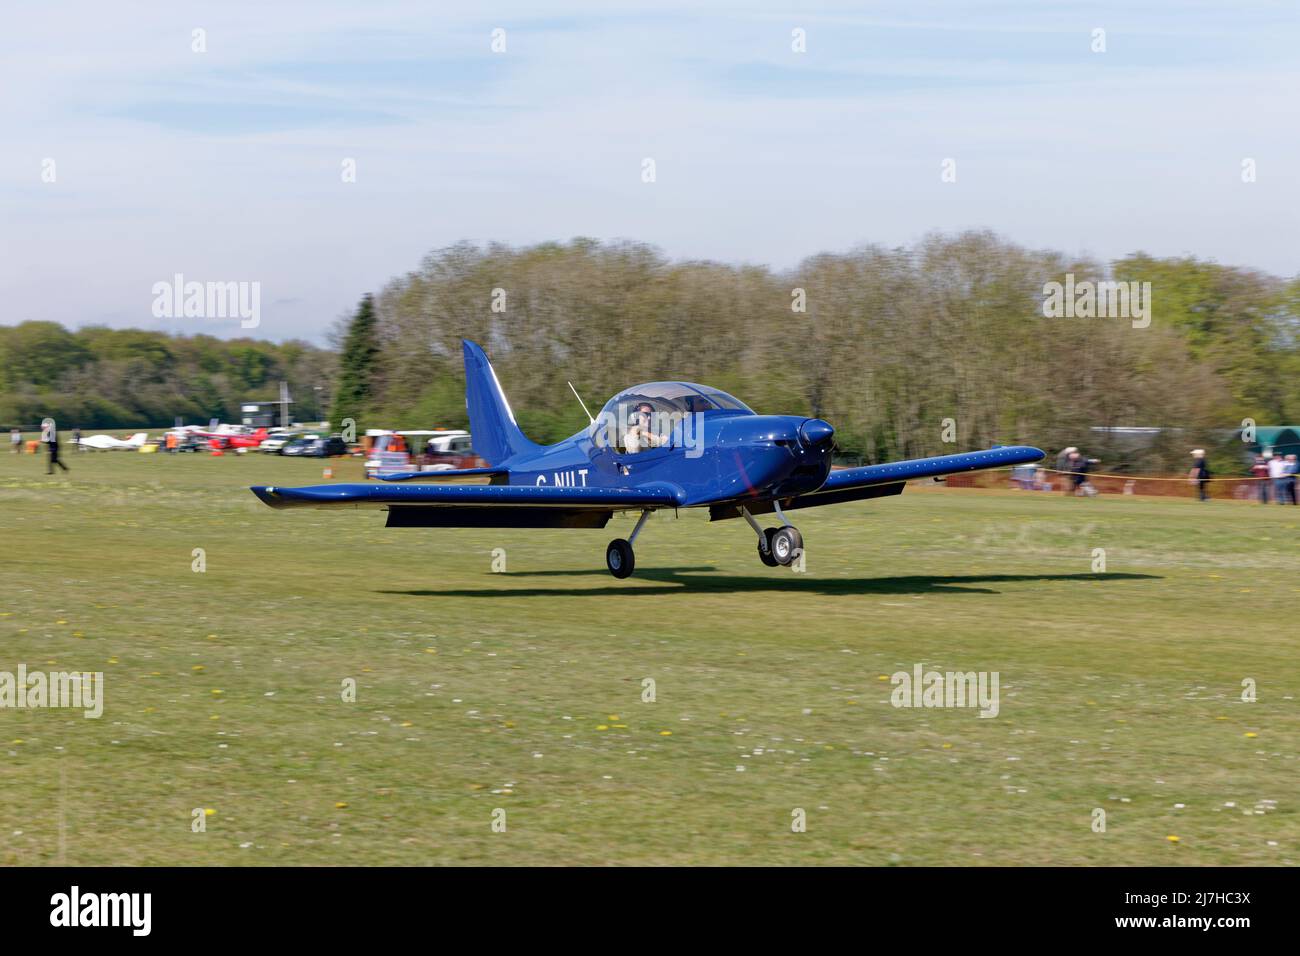 El avión ligero G-NILT Eurostar EV-97 azul inteligente llega al aeródromo de Popham, en Hampshire, Inglaterra, para asistir al vuelo anual de los aviones ultraligeros Foto de stock